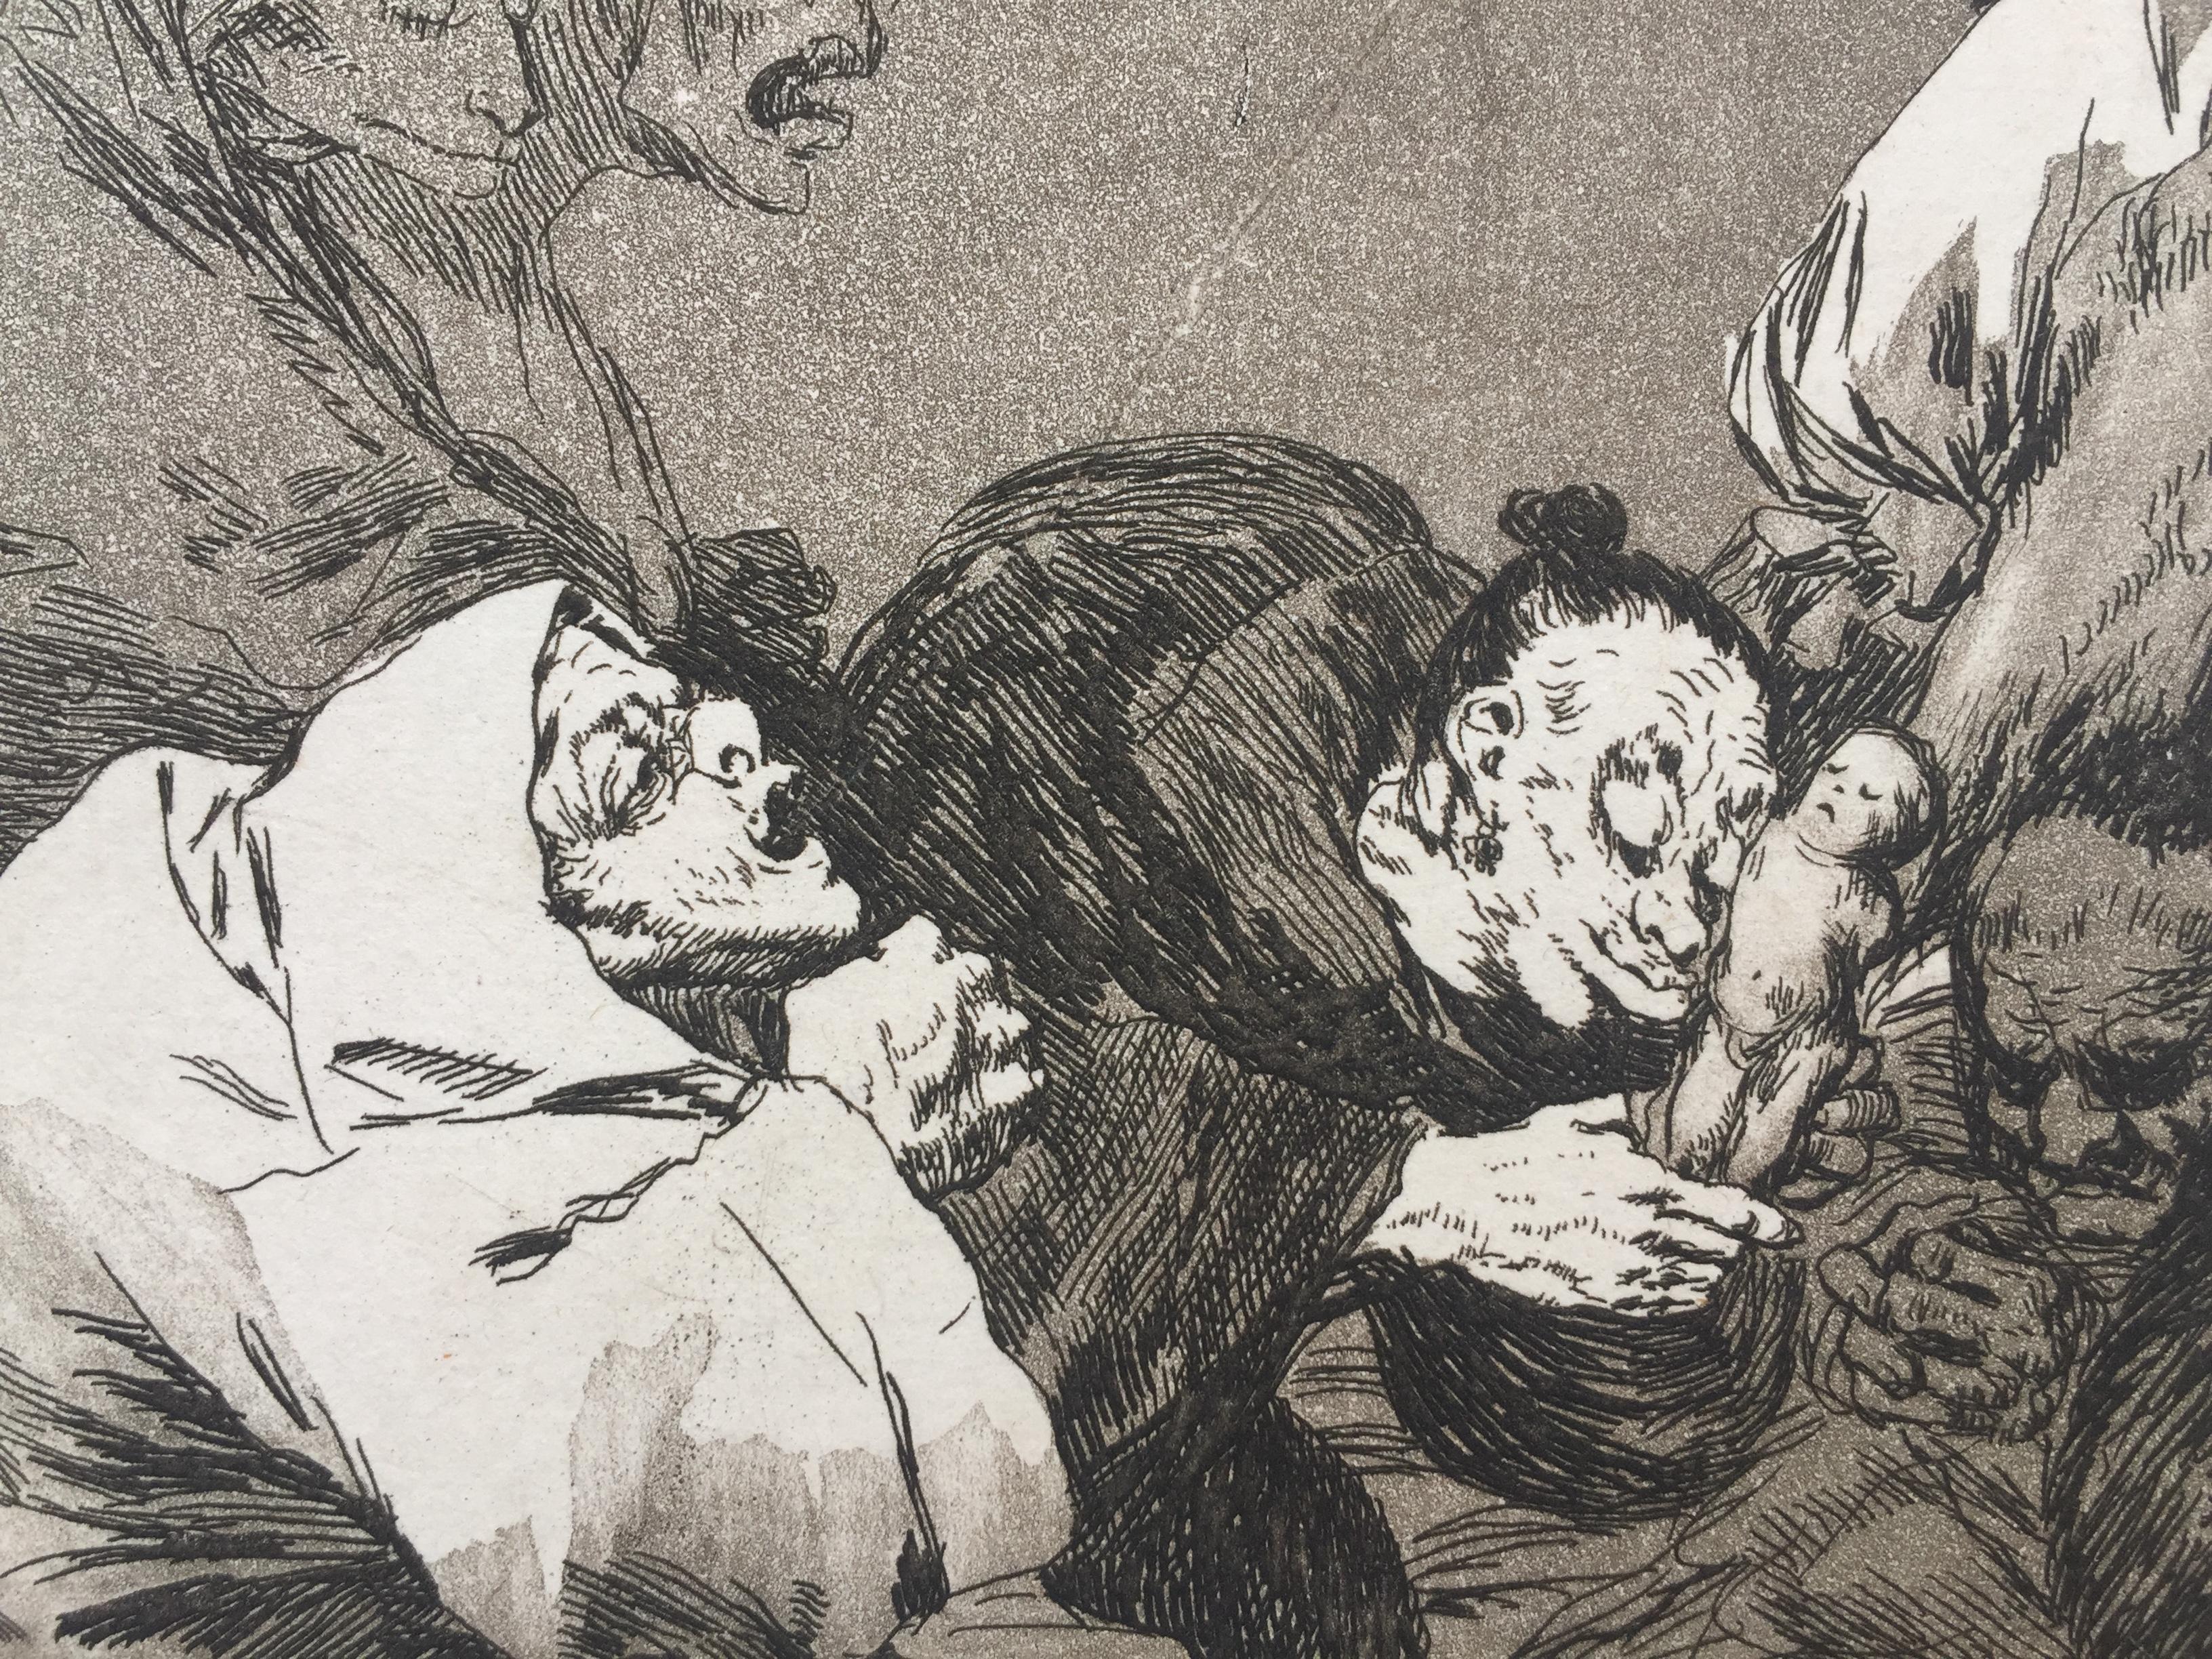 OBSEQUIO á el MAESTRO (‘A gift for the master’)  - Print by Francisco Goya